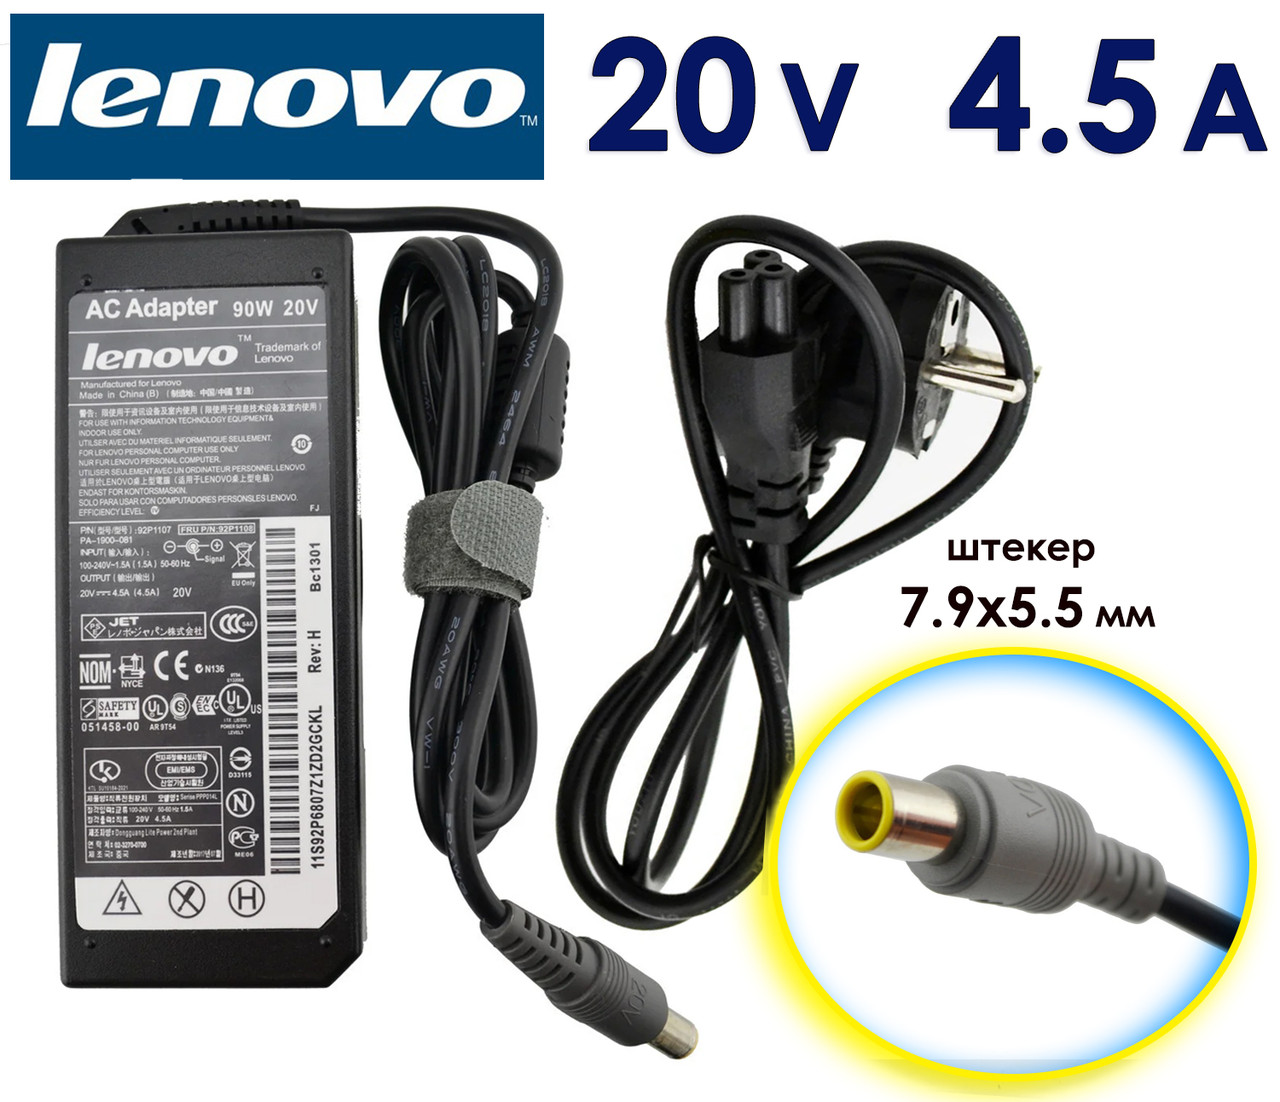 Зарядний пристрій Lenovo Thinkpad T400 20V 4.5A 90W 7.9x5.5 (8.0 pin) блок живлення для ноутбука, зарядка, зарядне, адаптер